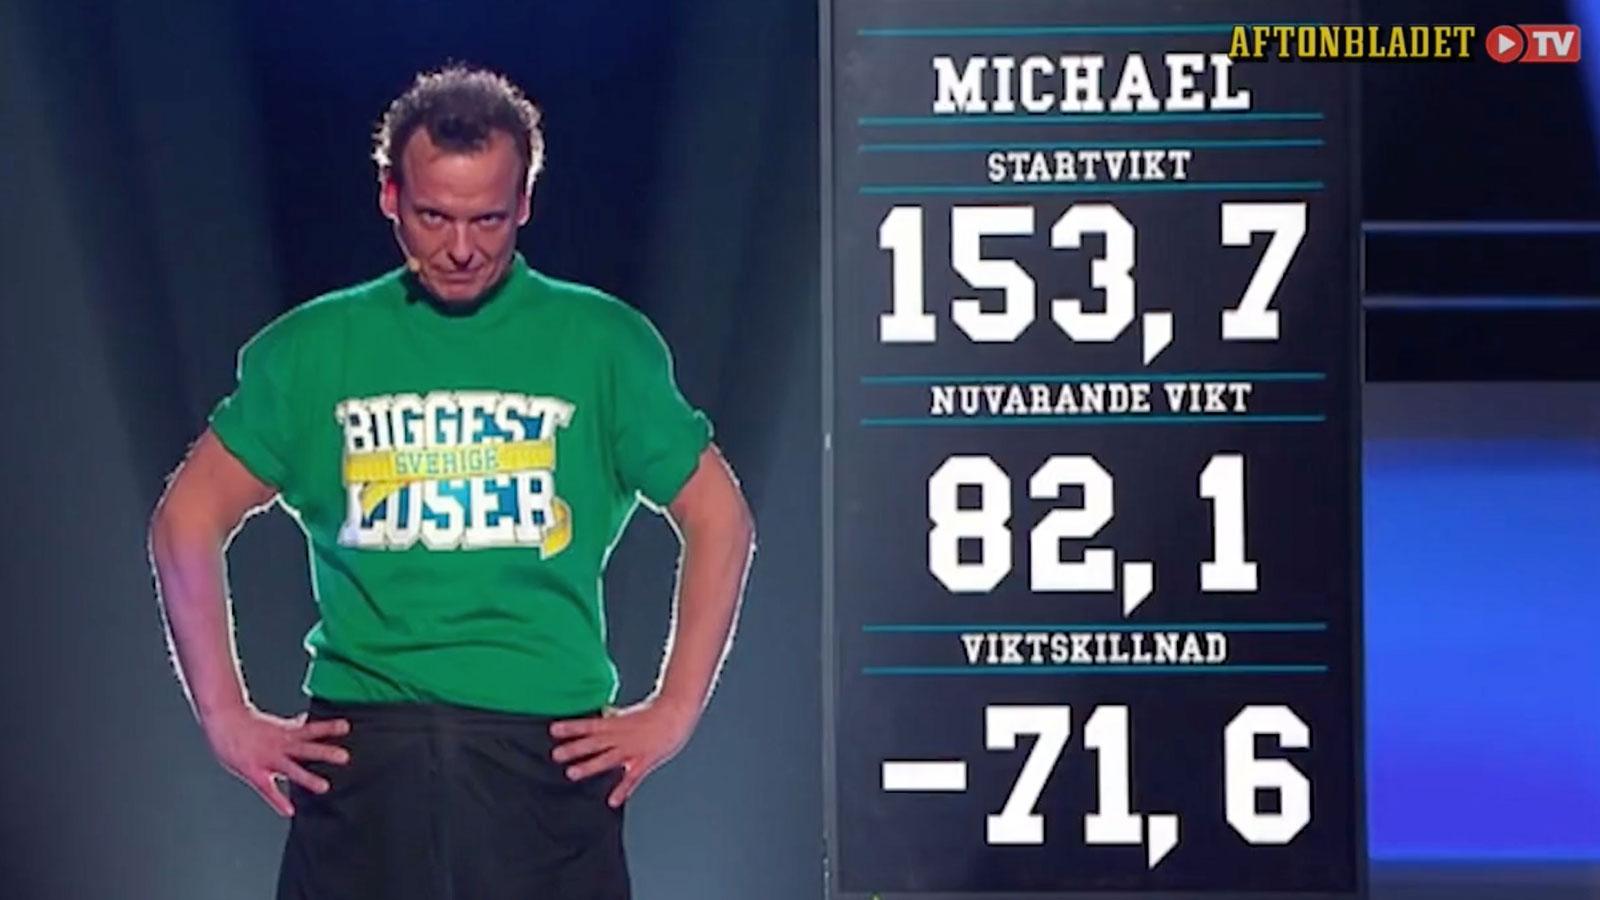 Efter sitt tidigare deltagande i ”Biggest loser” checkade Mikael ut på 82,1 kilo.